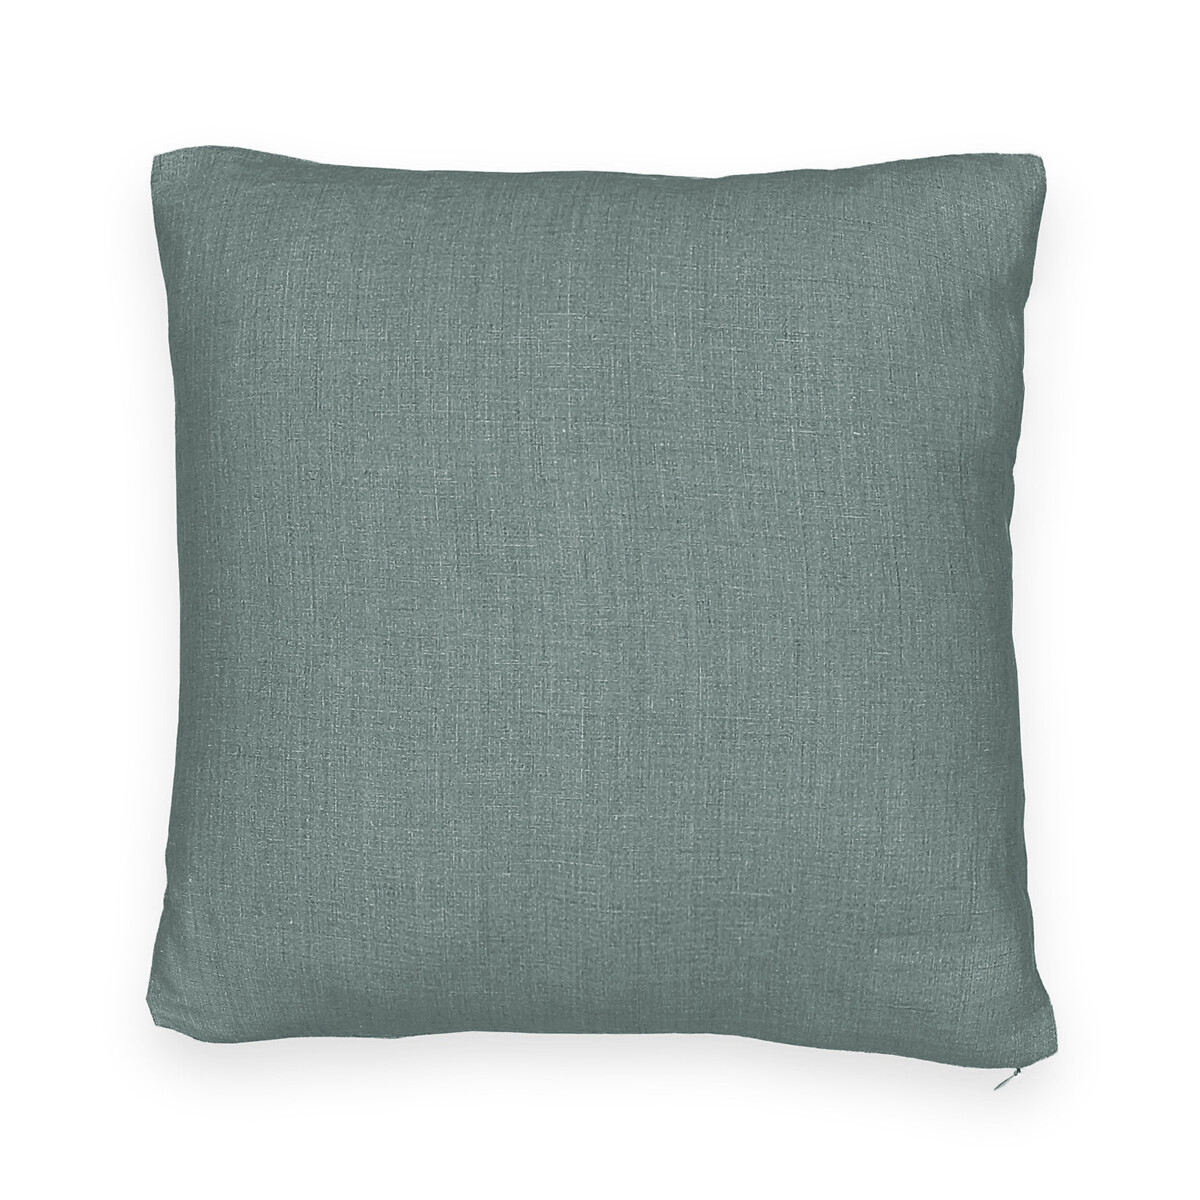 Чехол для подушки из стираного льна Onega 40 x 40 см синий чехол на подушку прямоугольный onega x velvet 50 x 30 см зеленый